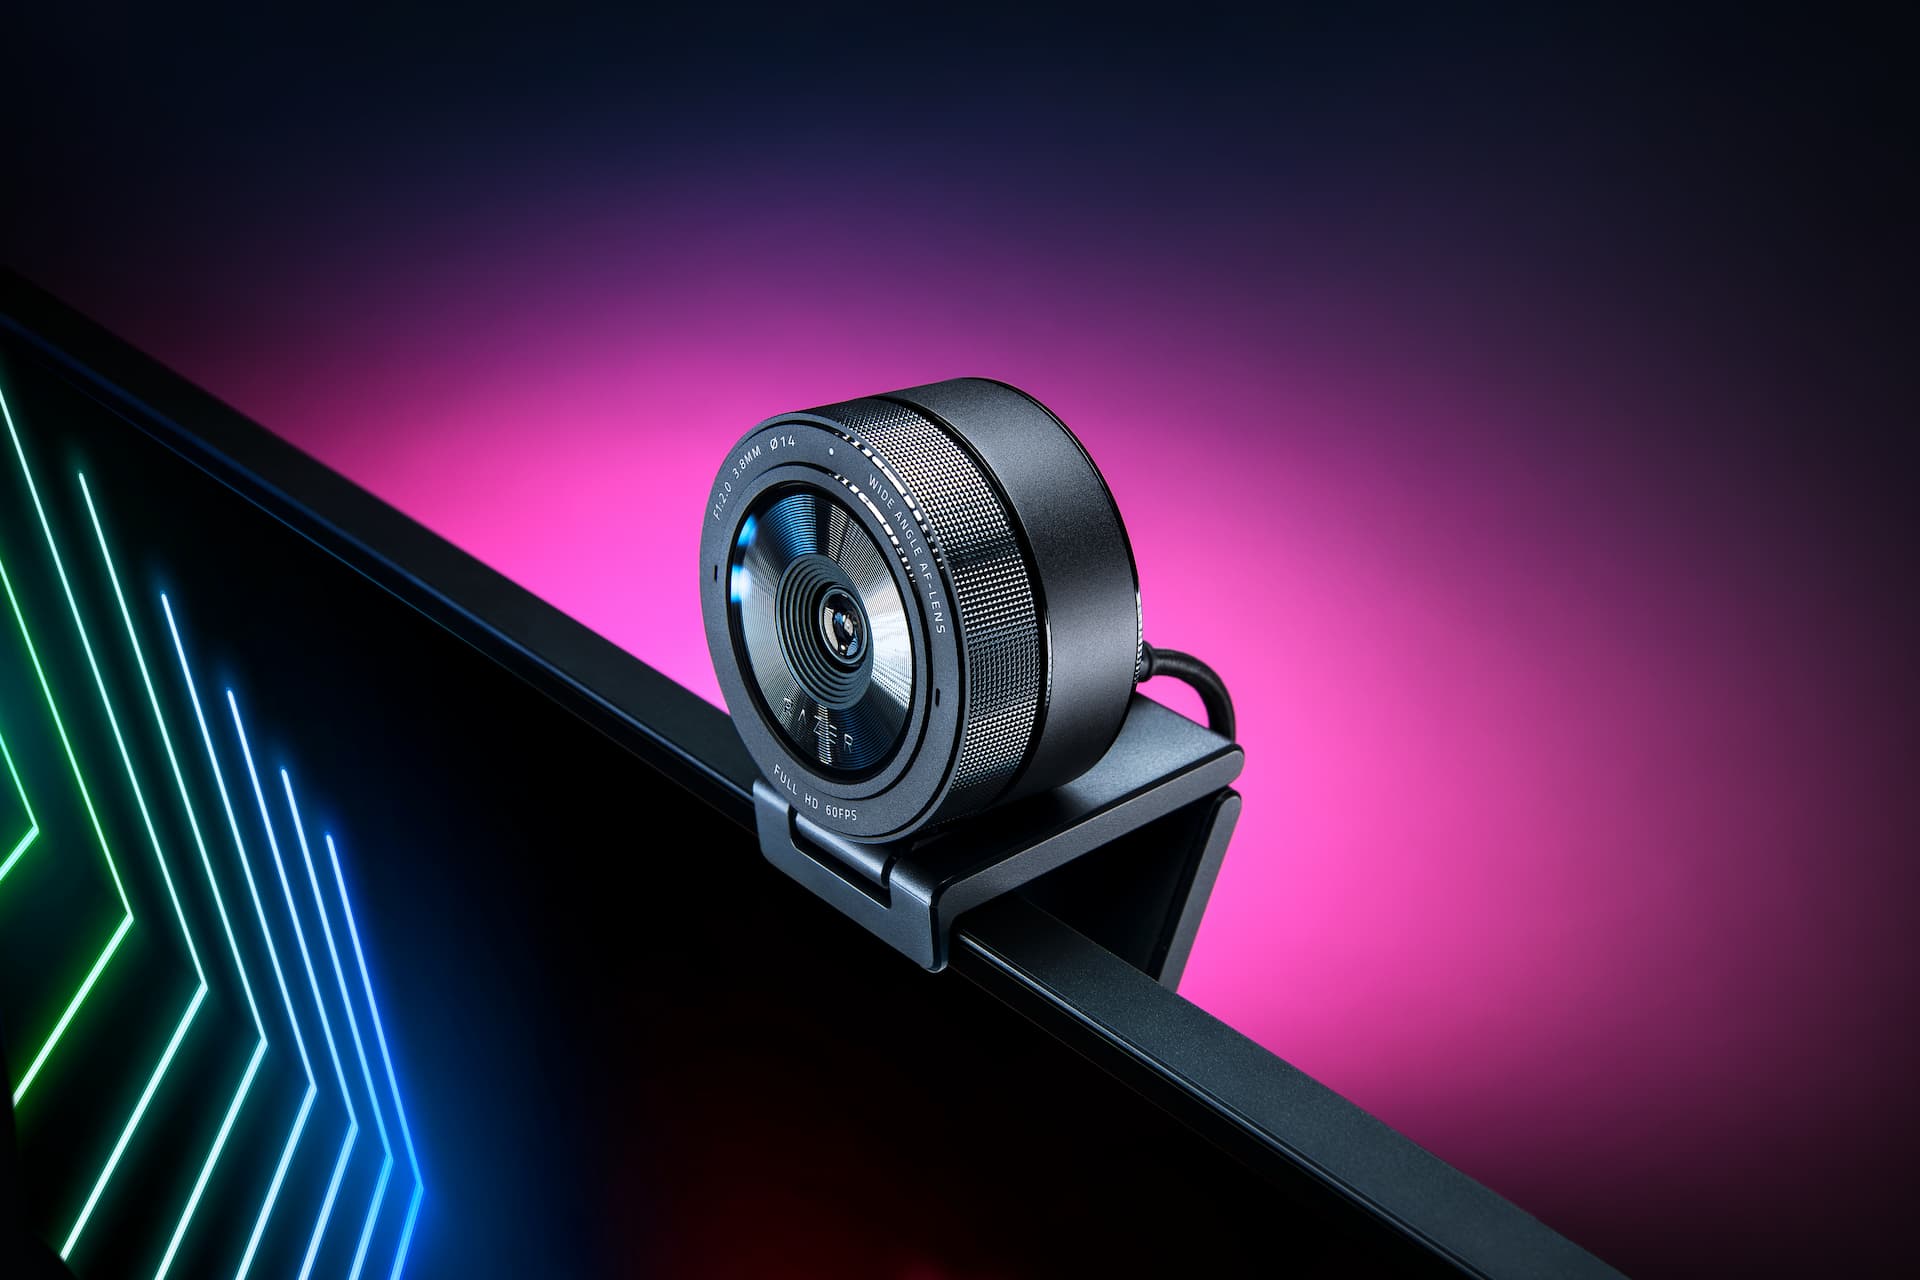 De Razer Kiyo Pro is de nieuwe webcam voor thuiswerkers en streamers